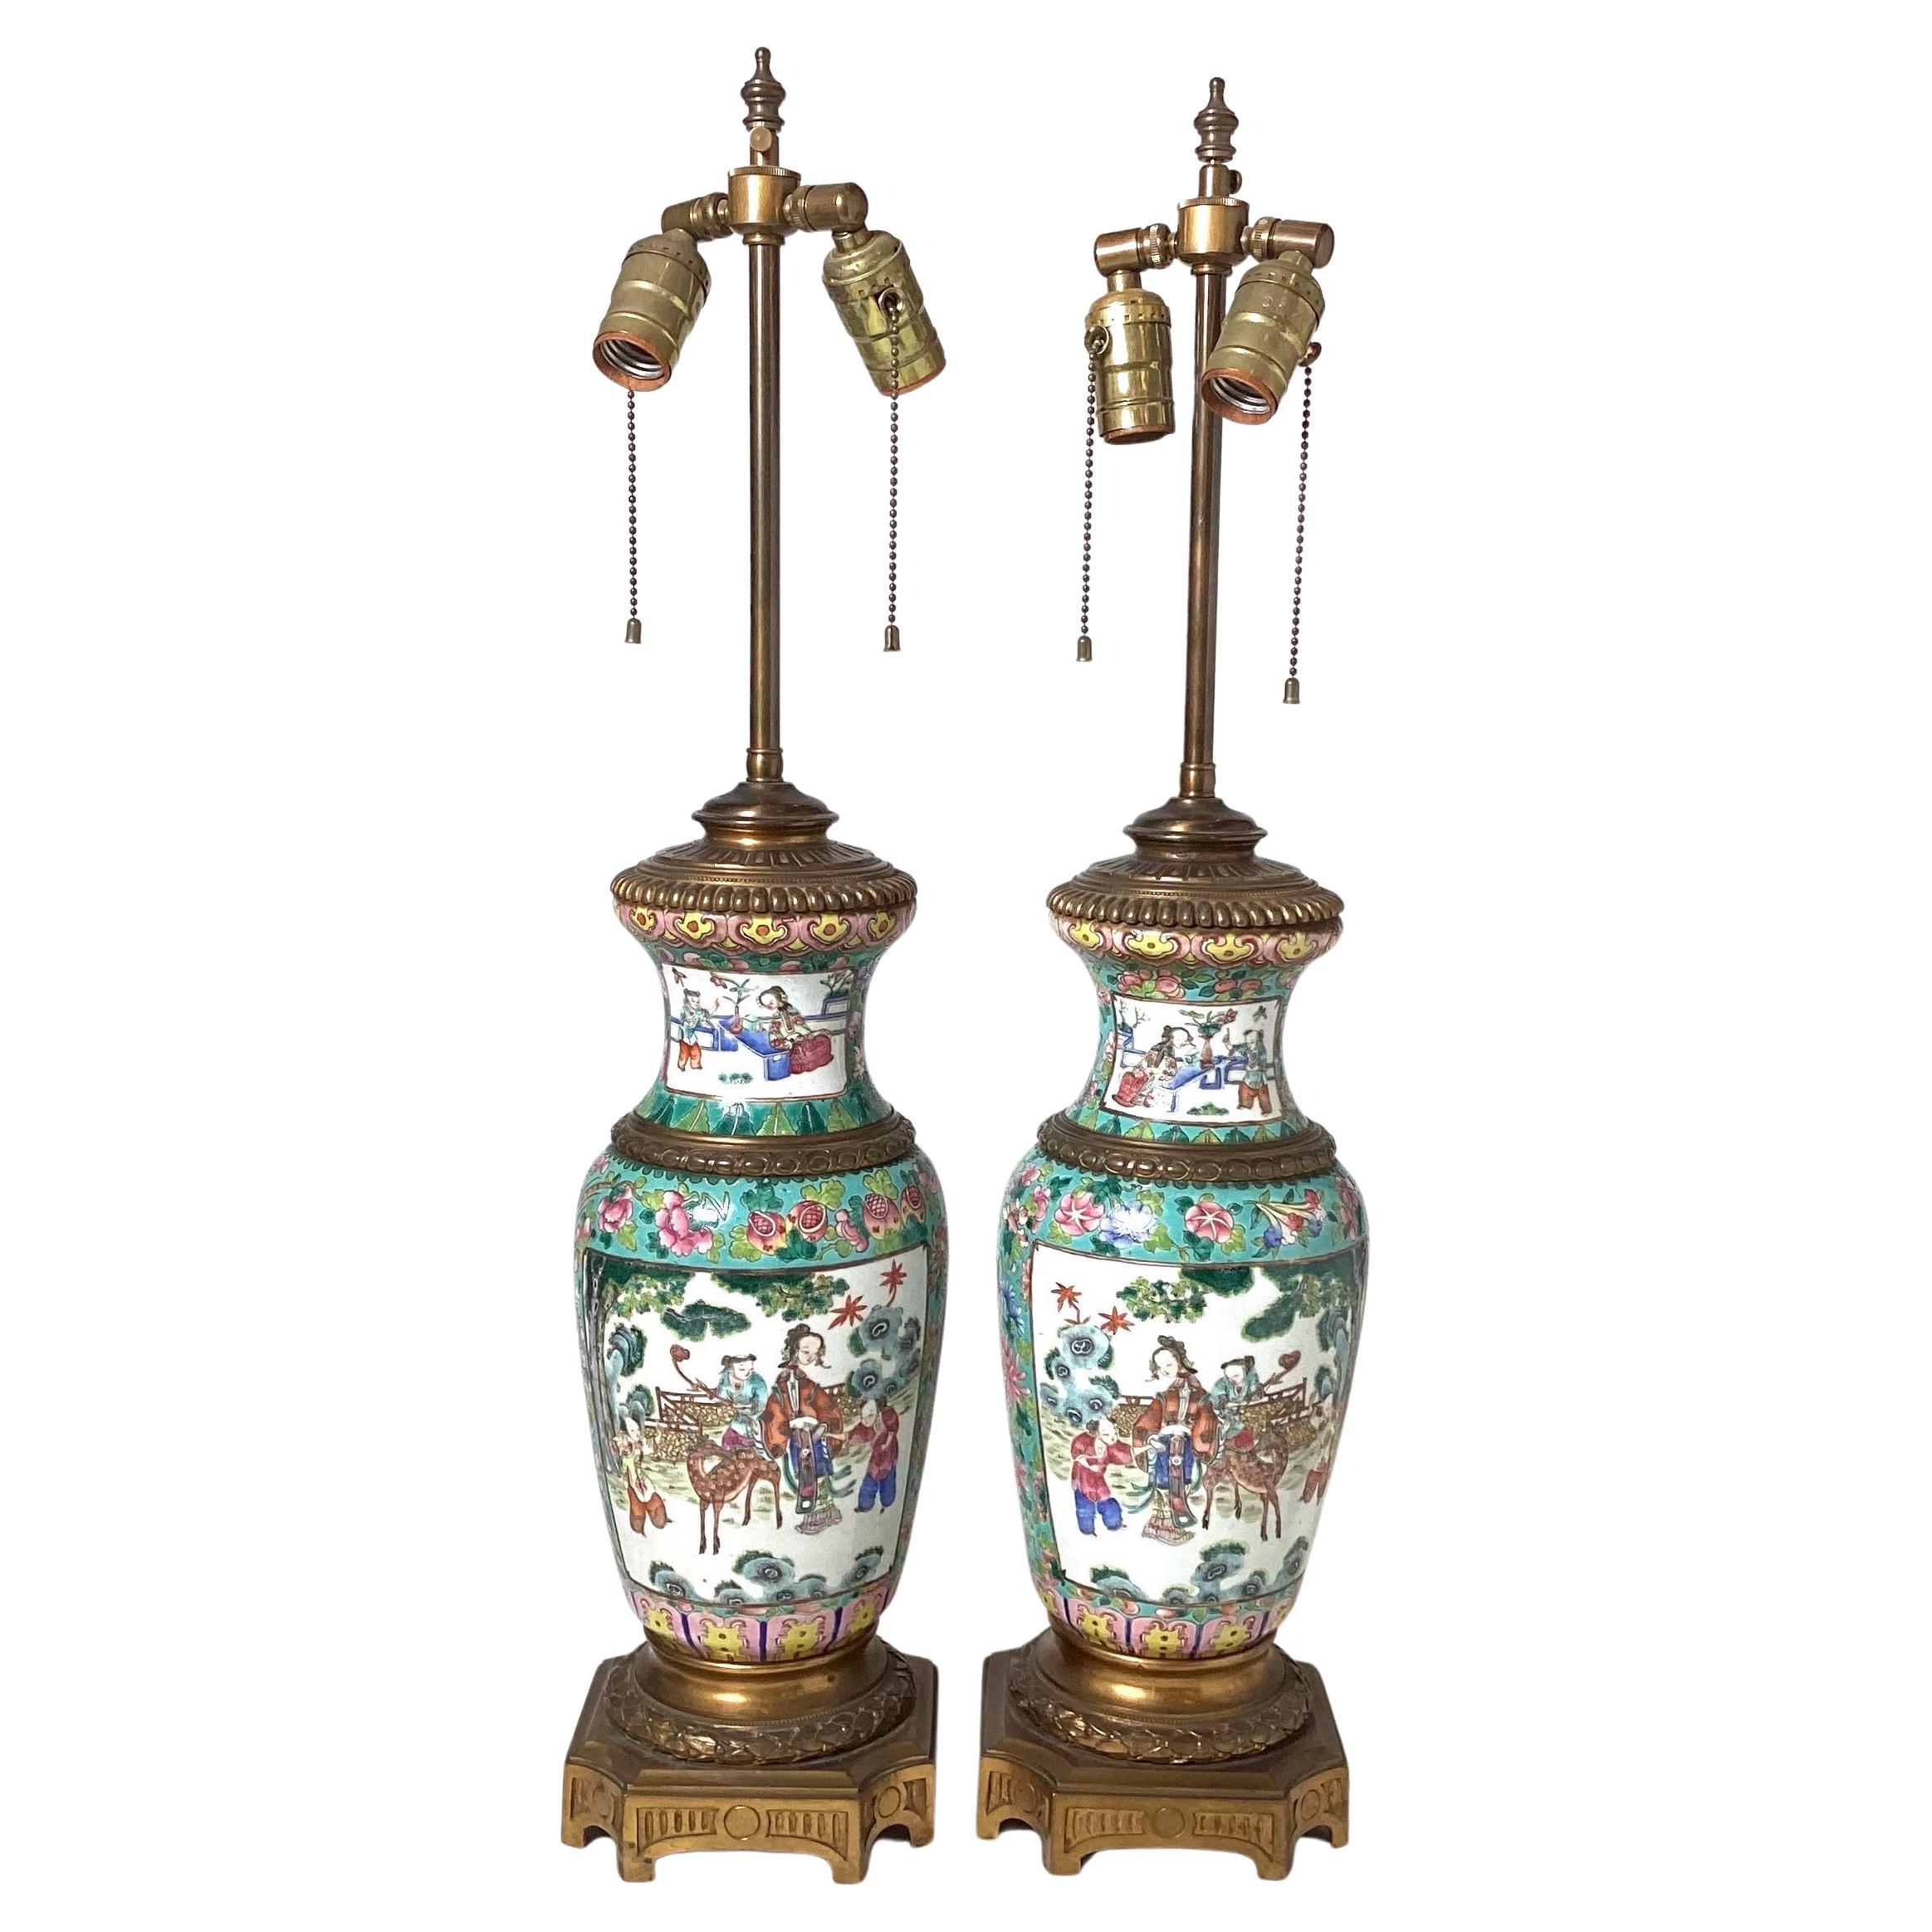 Paire d'étonnantes lampes montées sur bronze d'exportation chinoise du début du 19e siècle